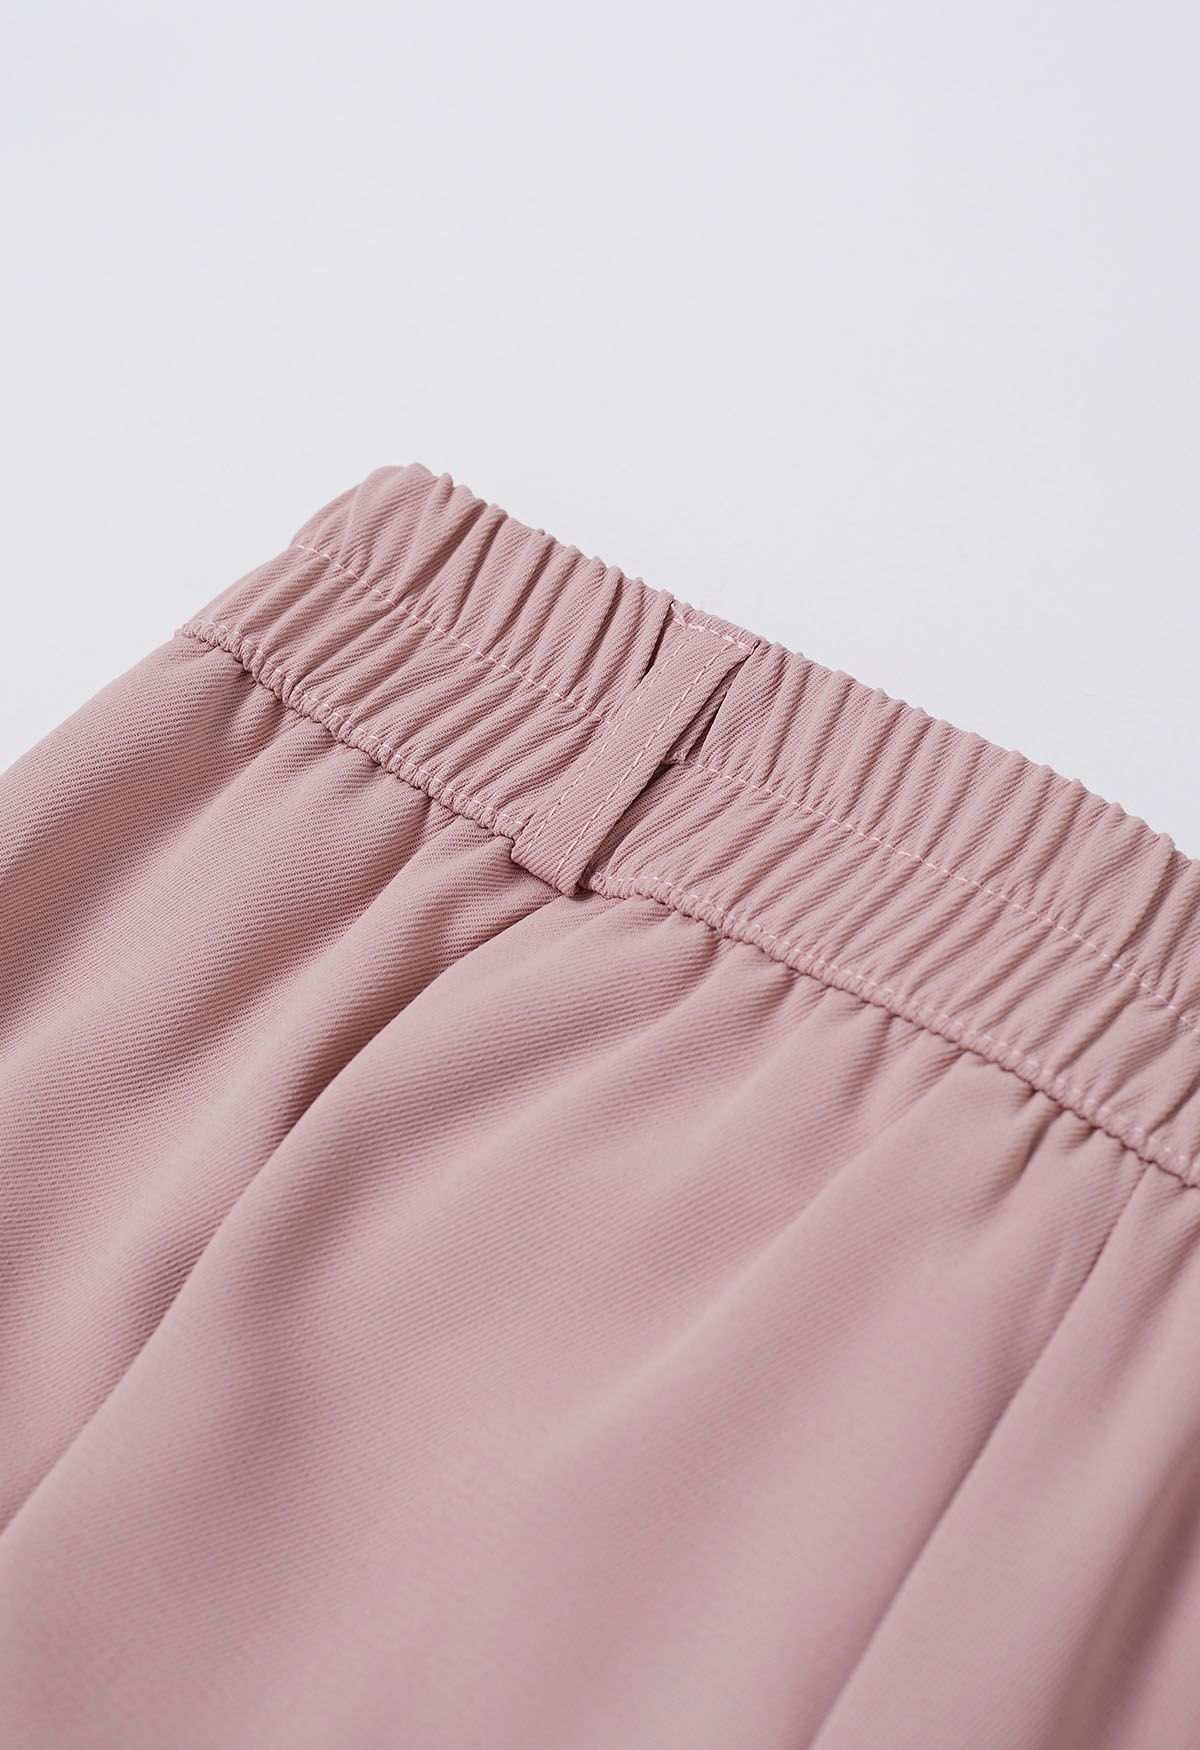 Pantalones de pierna recta con pliegues simples en rosa